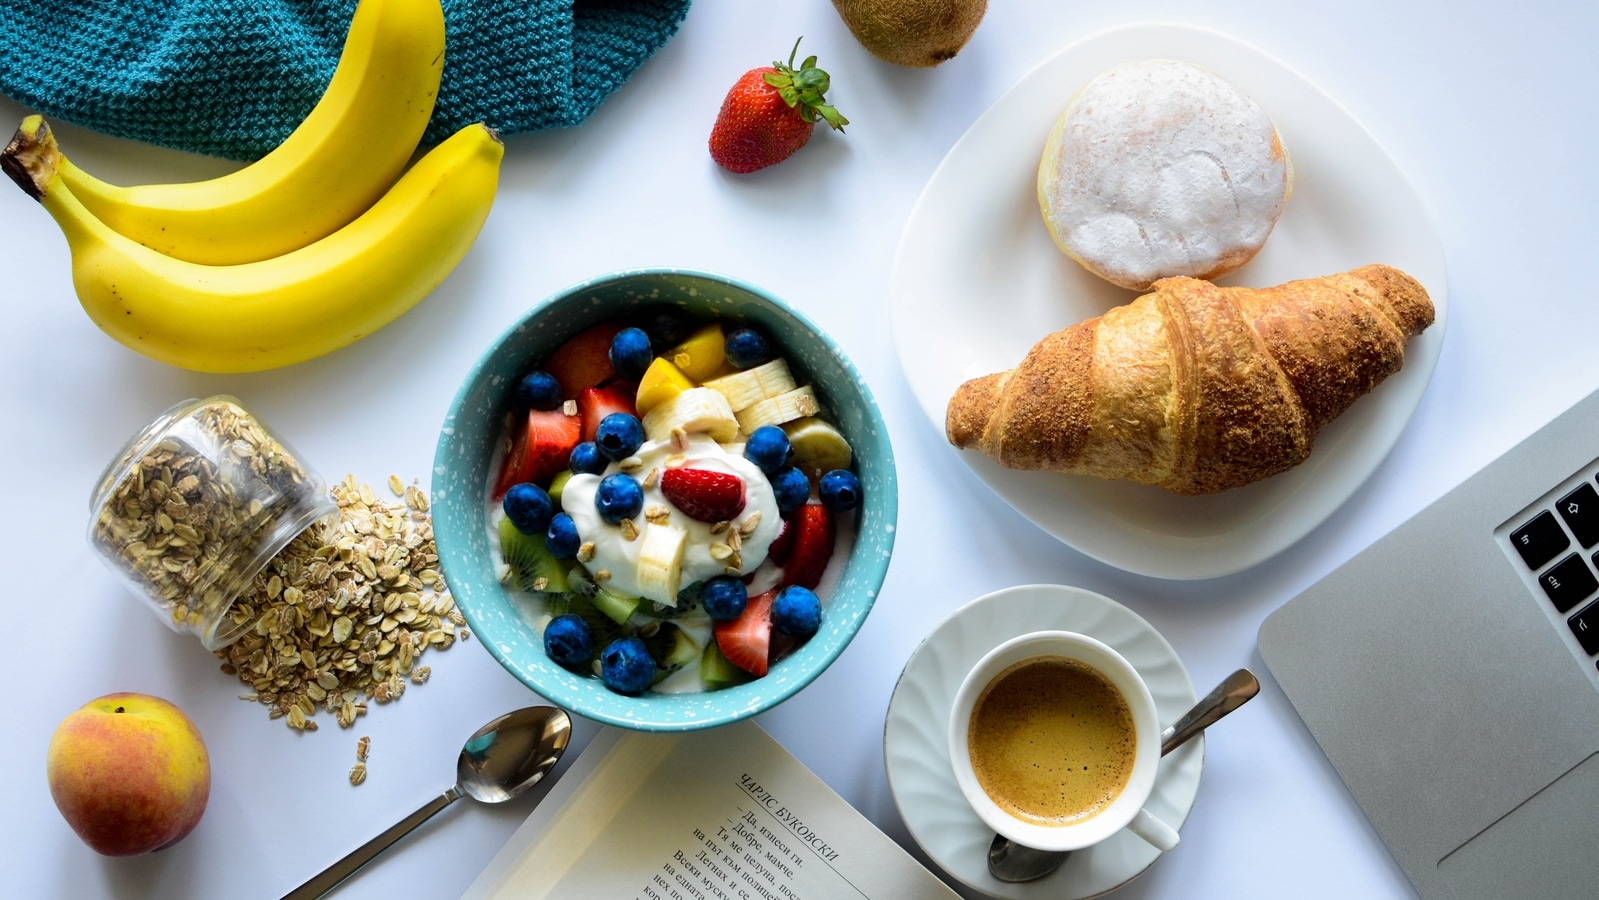 Breakfast skipping and nutrient deficiencies